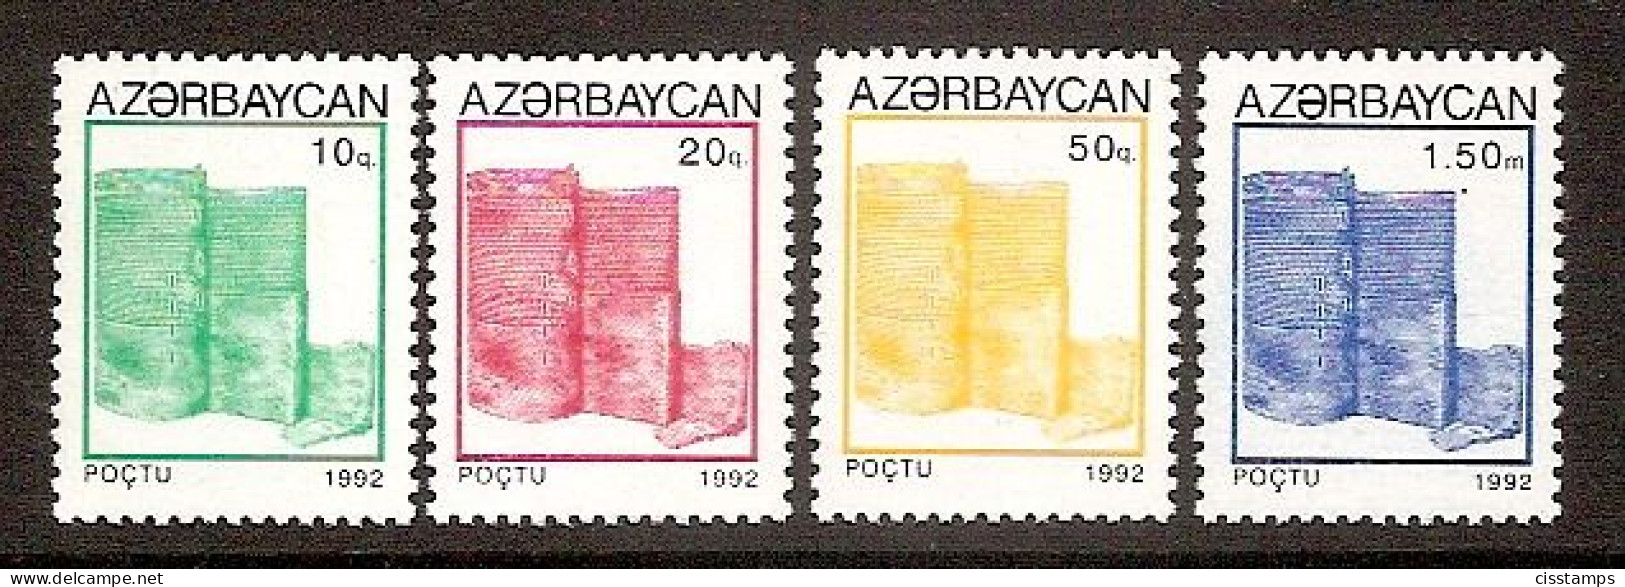 Azerbaijan 1992●Definitives●Tower Architecture●●Freimarken●Turm●Mi75-78 MNH - Aserbaidschan